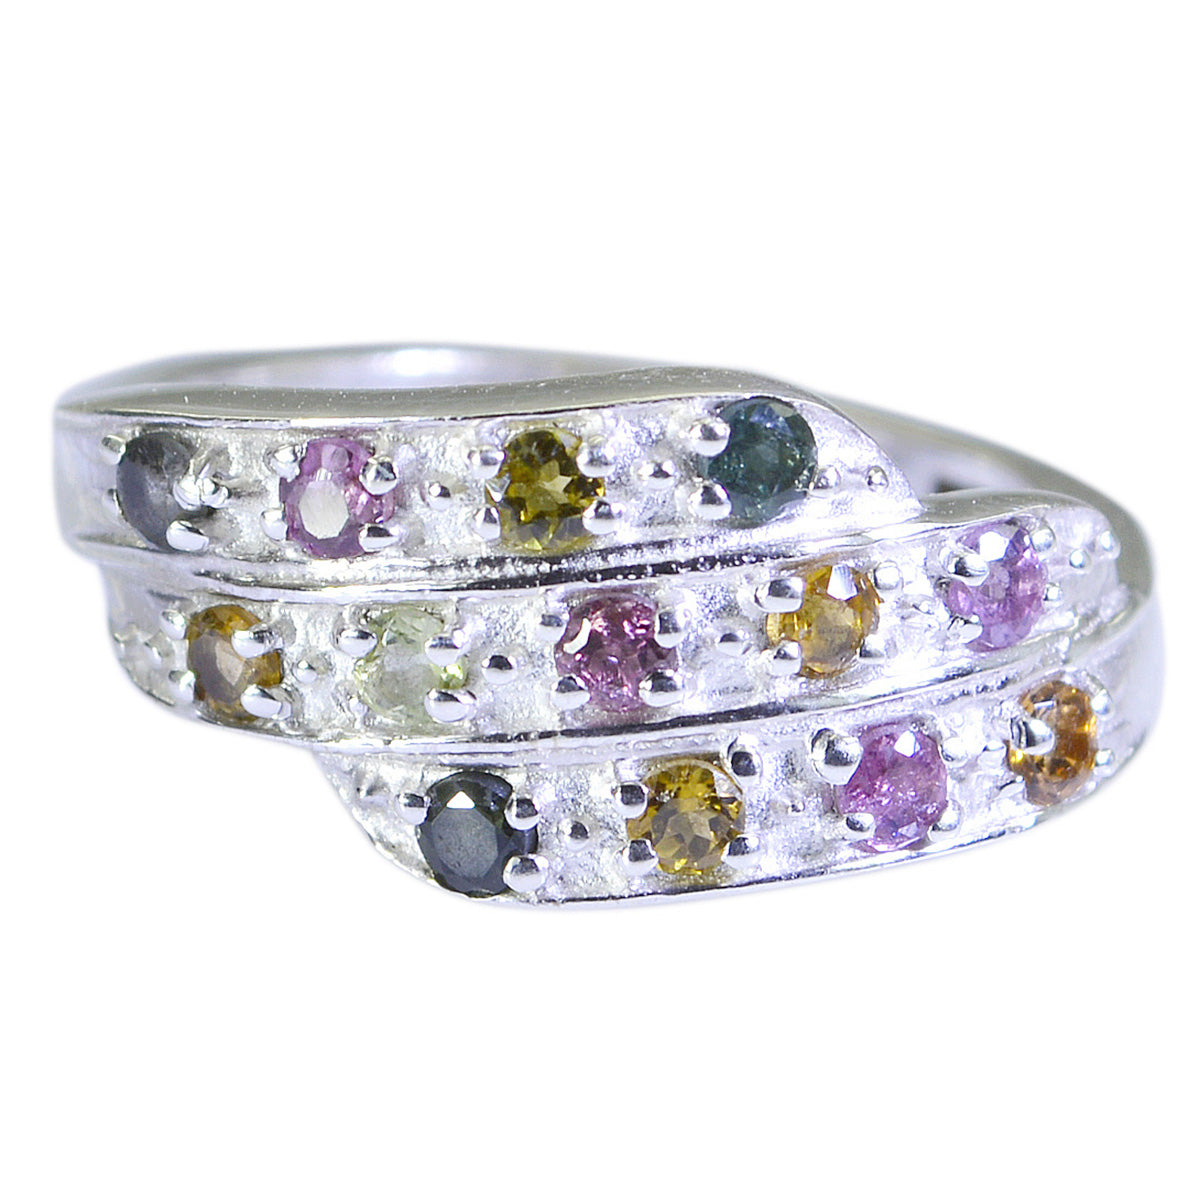 Maravillosa piedra turquesa anillo de plata de ley 925 joyería arcoíris